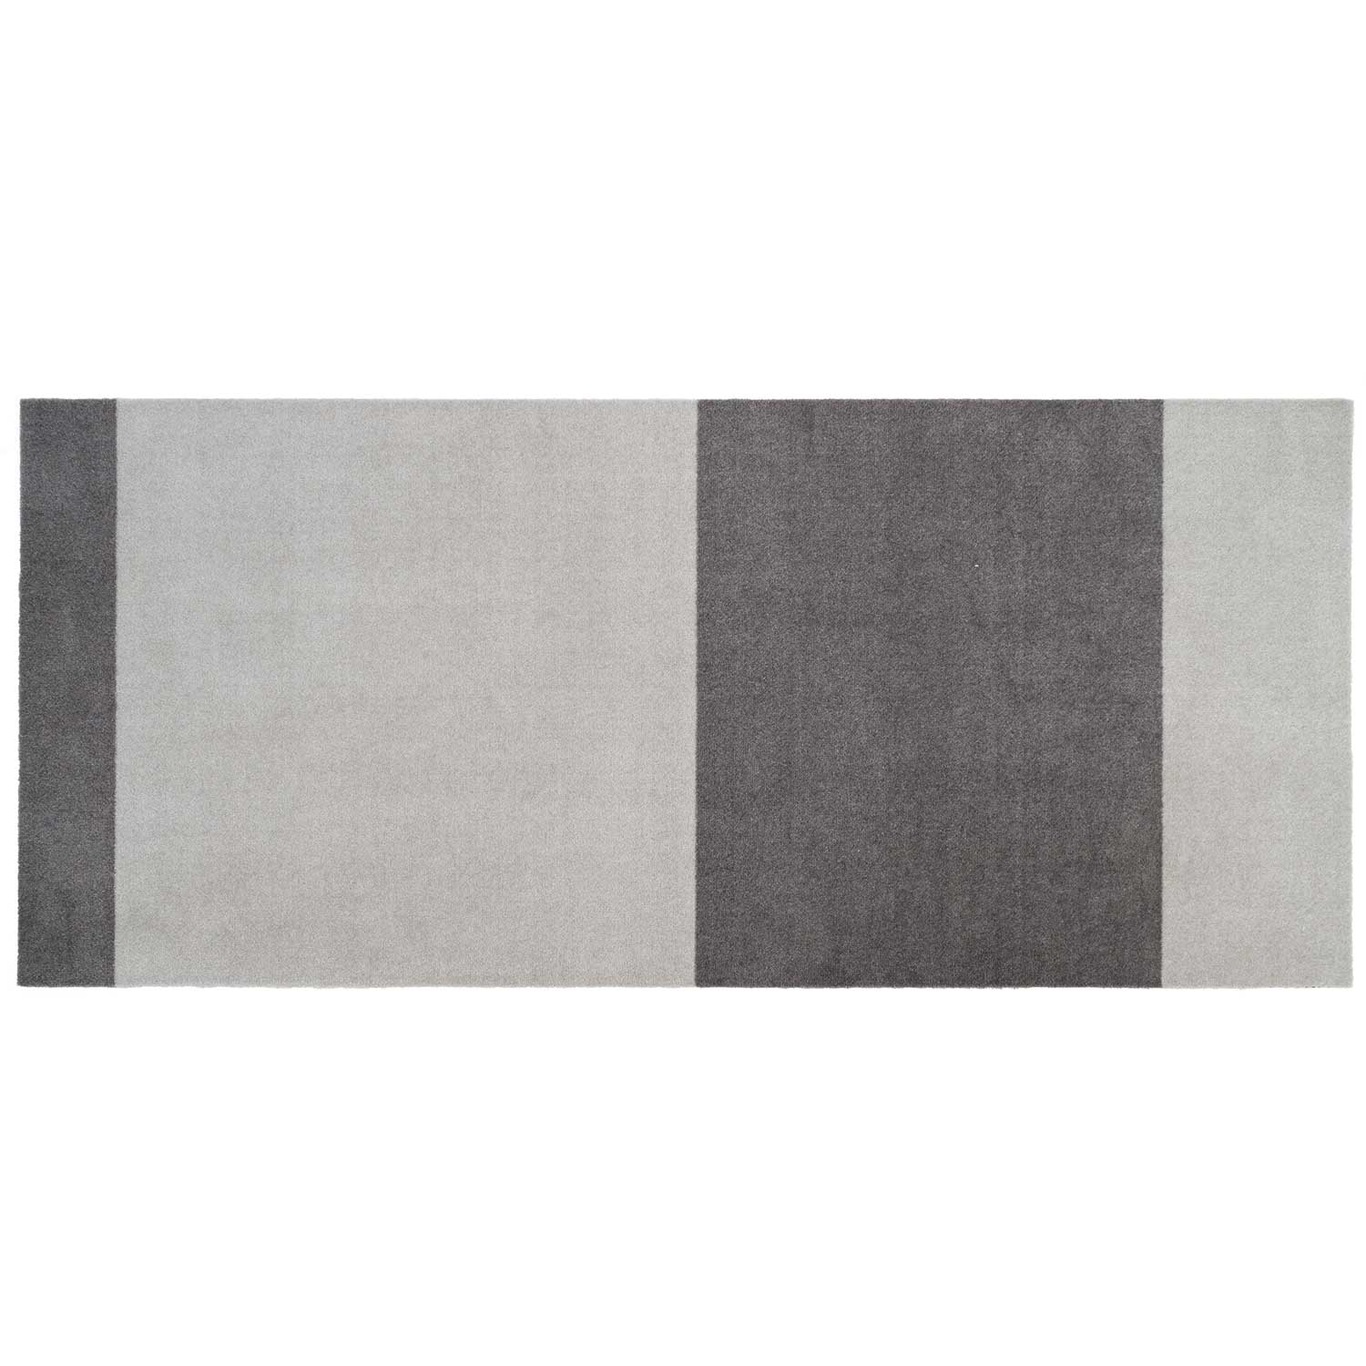 Stripes Matta Steel Grey / Ljusgrå, 90x200 cm